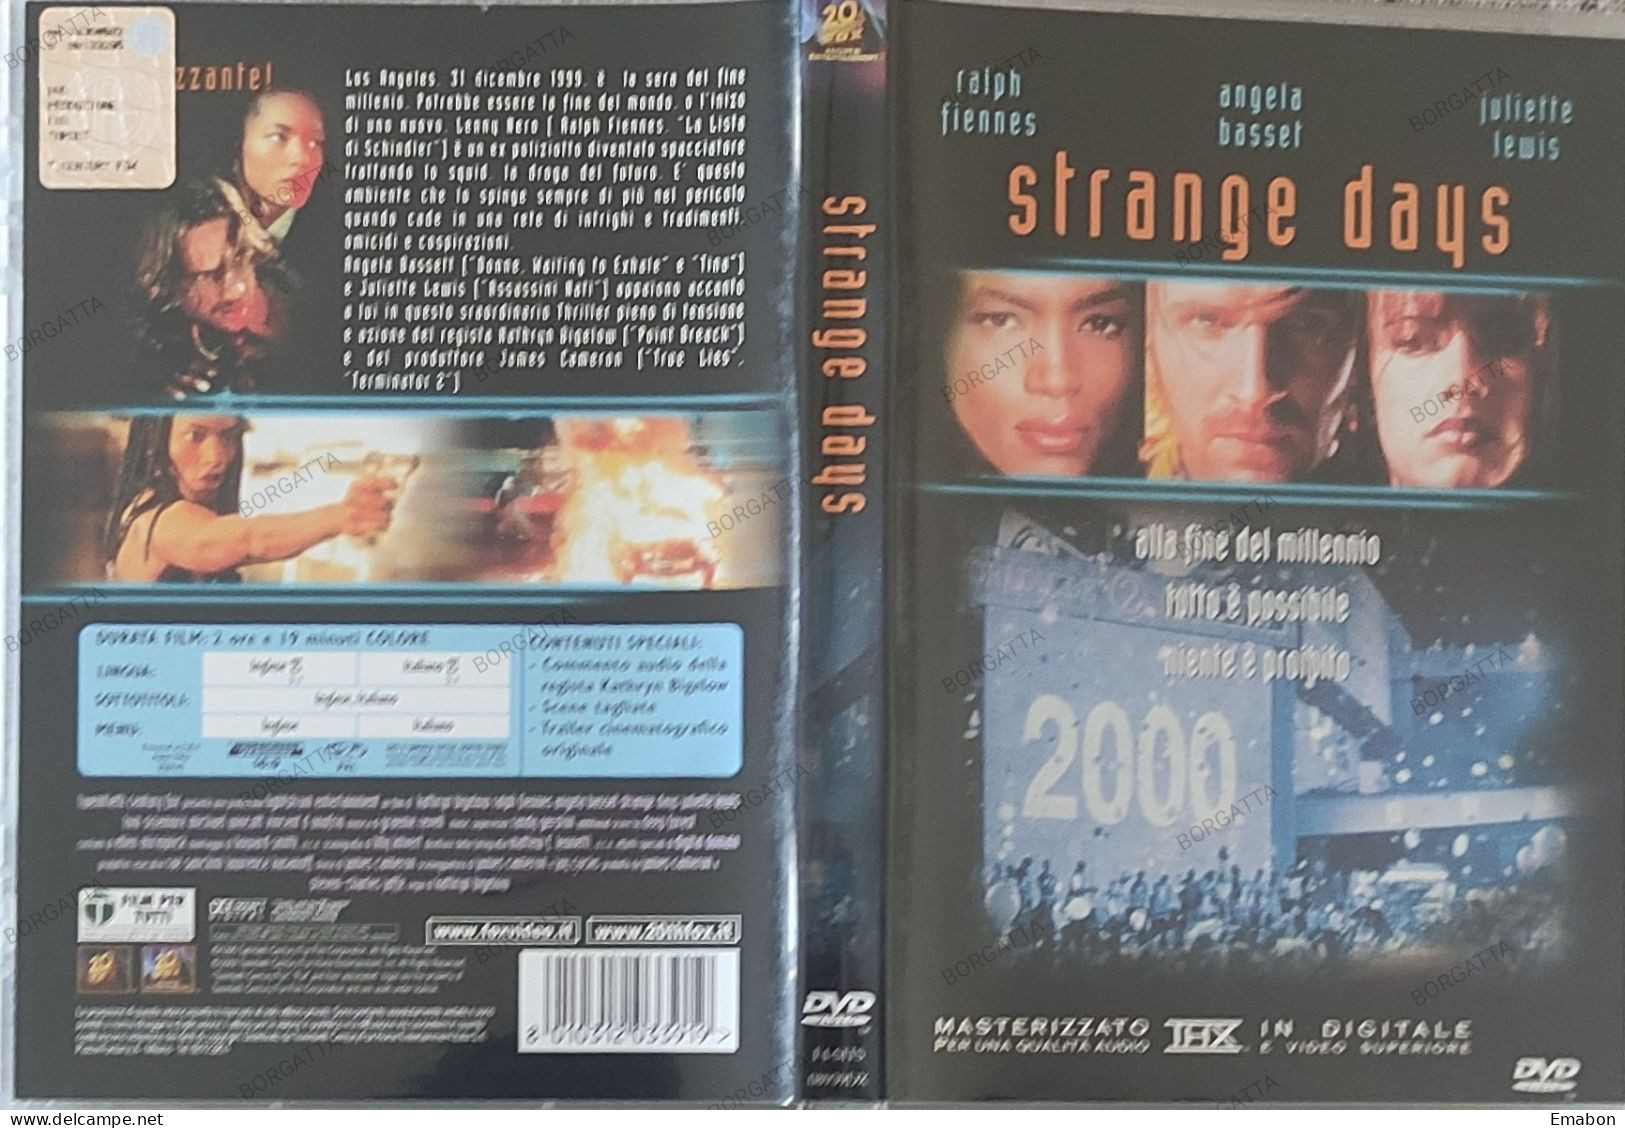 BORGATTA - FANTASCIENZA - Dvd STRANGE DAYS - FIENNES, BASSET  - PAL 2 - 20THFOX 2002- USATO In Buono Stato - Science-Fiction & Fantasy